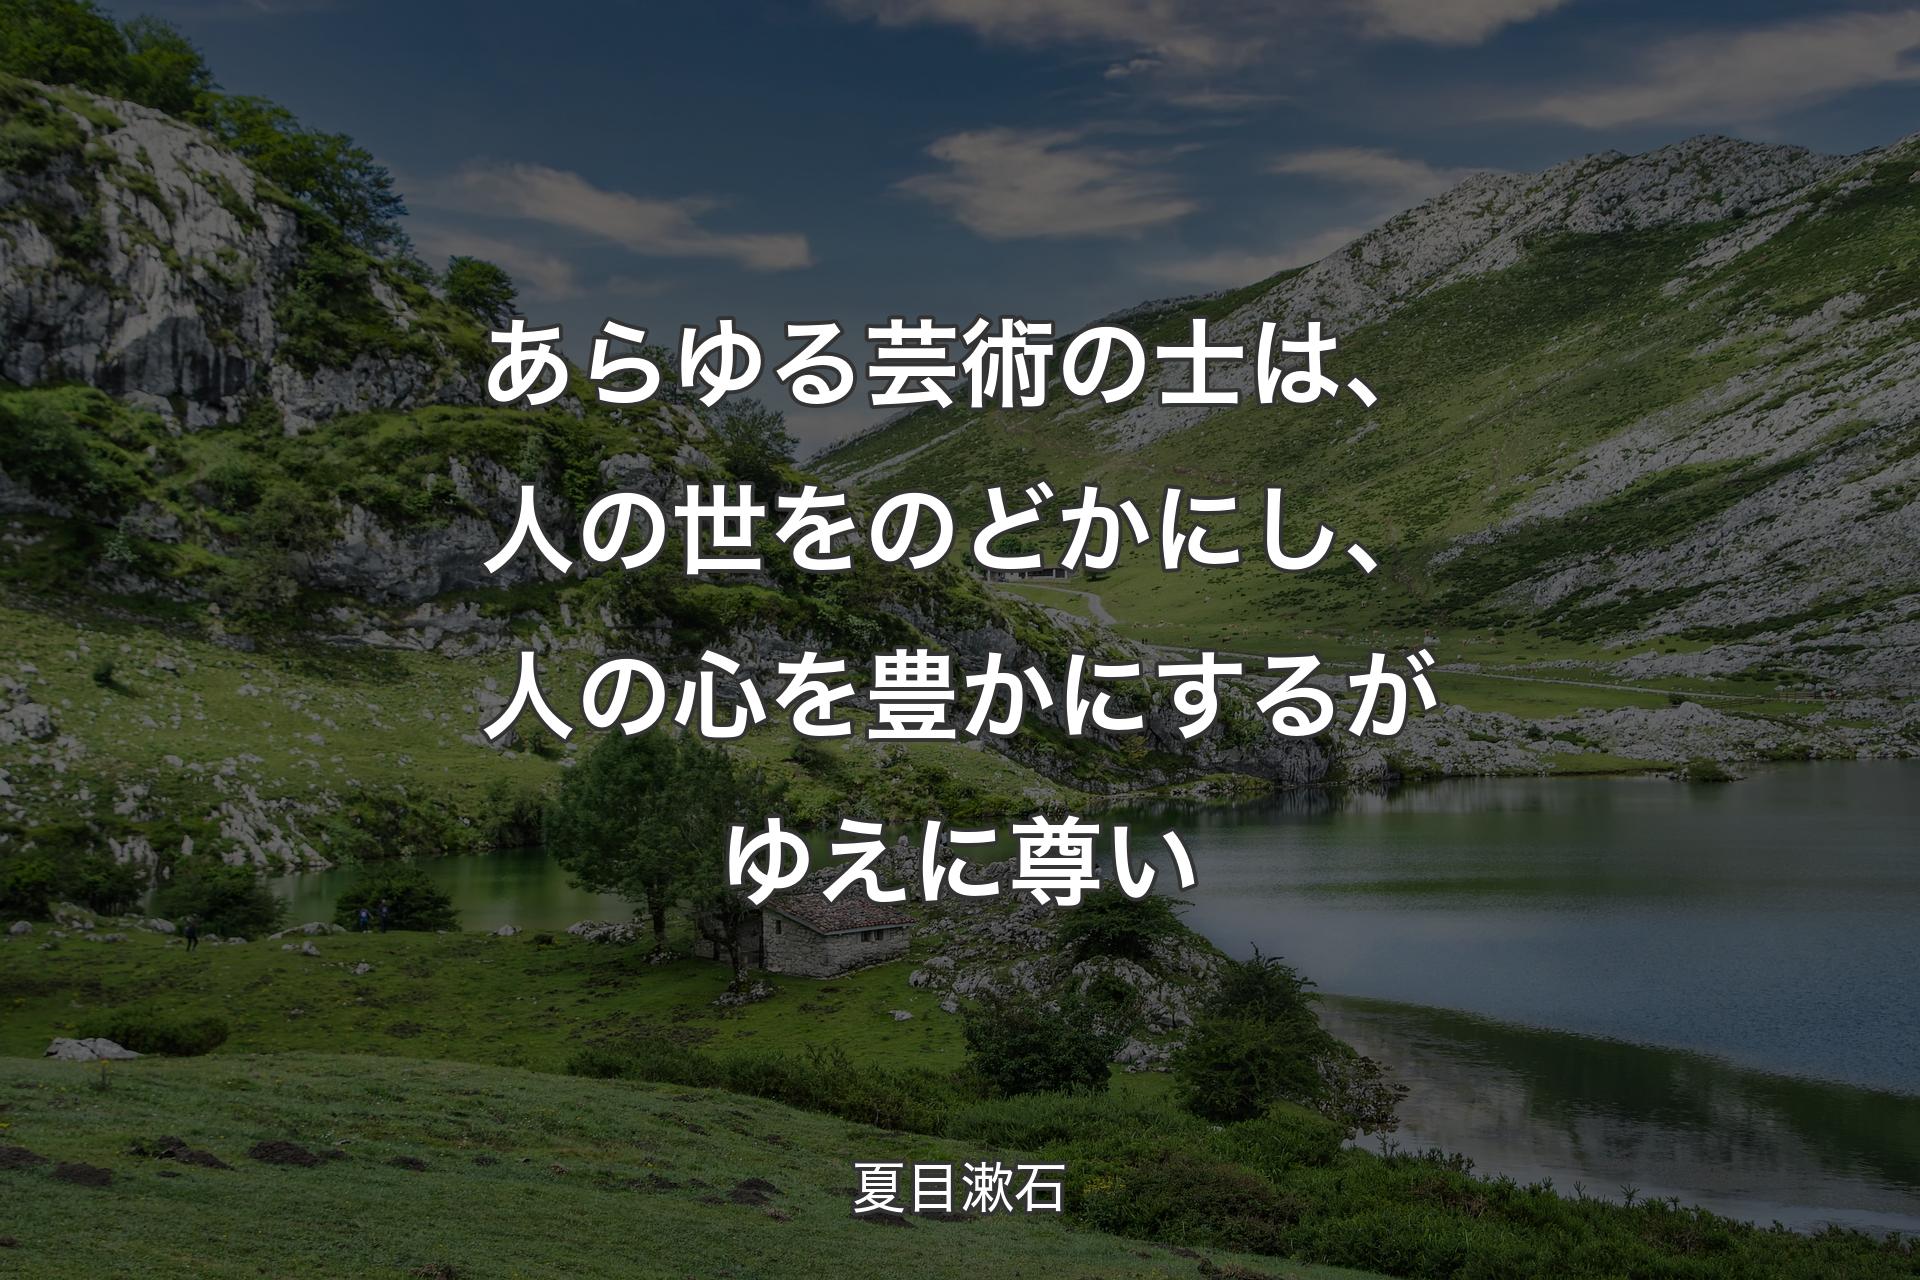 【背景1】あらゆる芸術の士は、人の世をのどかにし、人の心を豊かにするがゆえに尊い - 夏目漱石